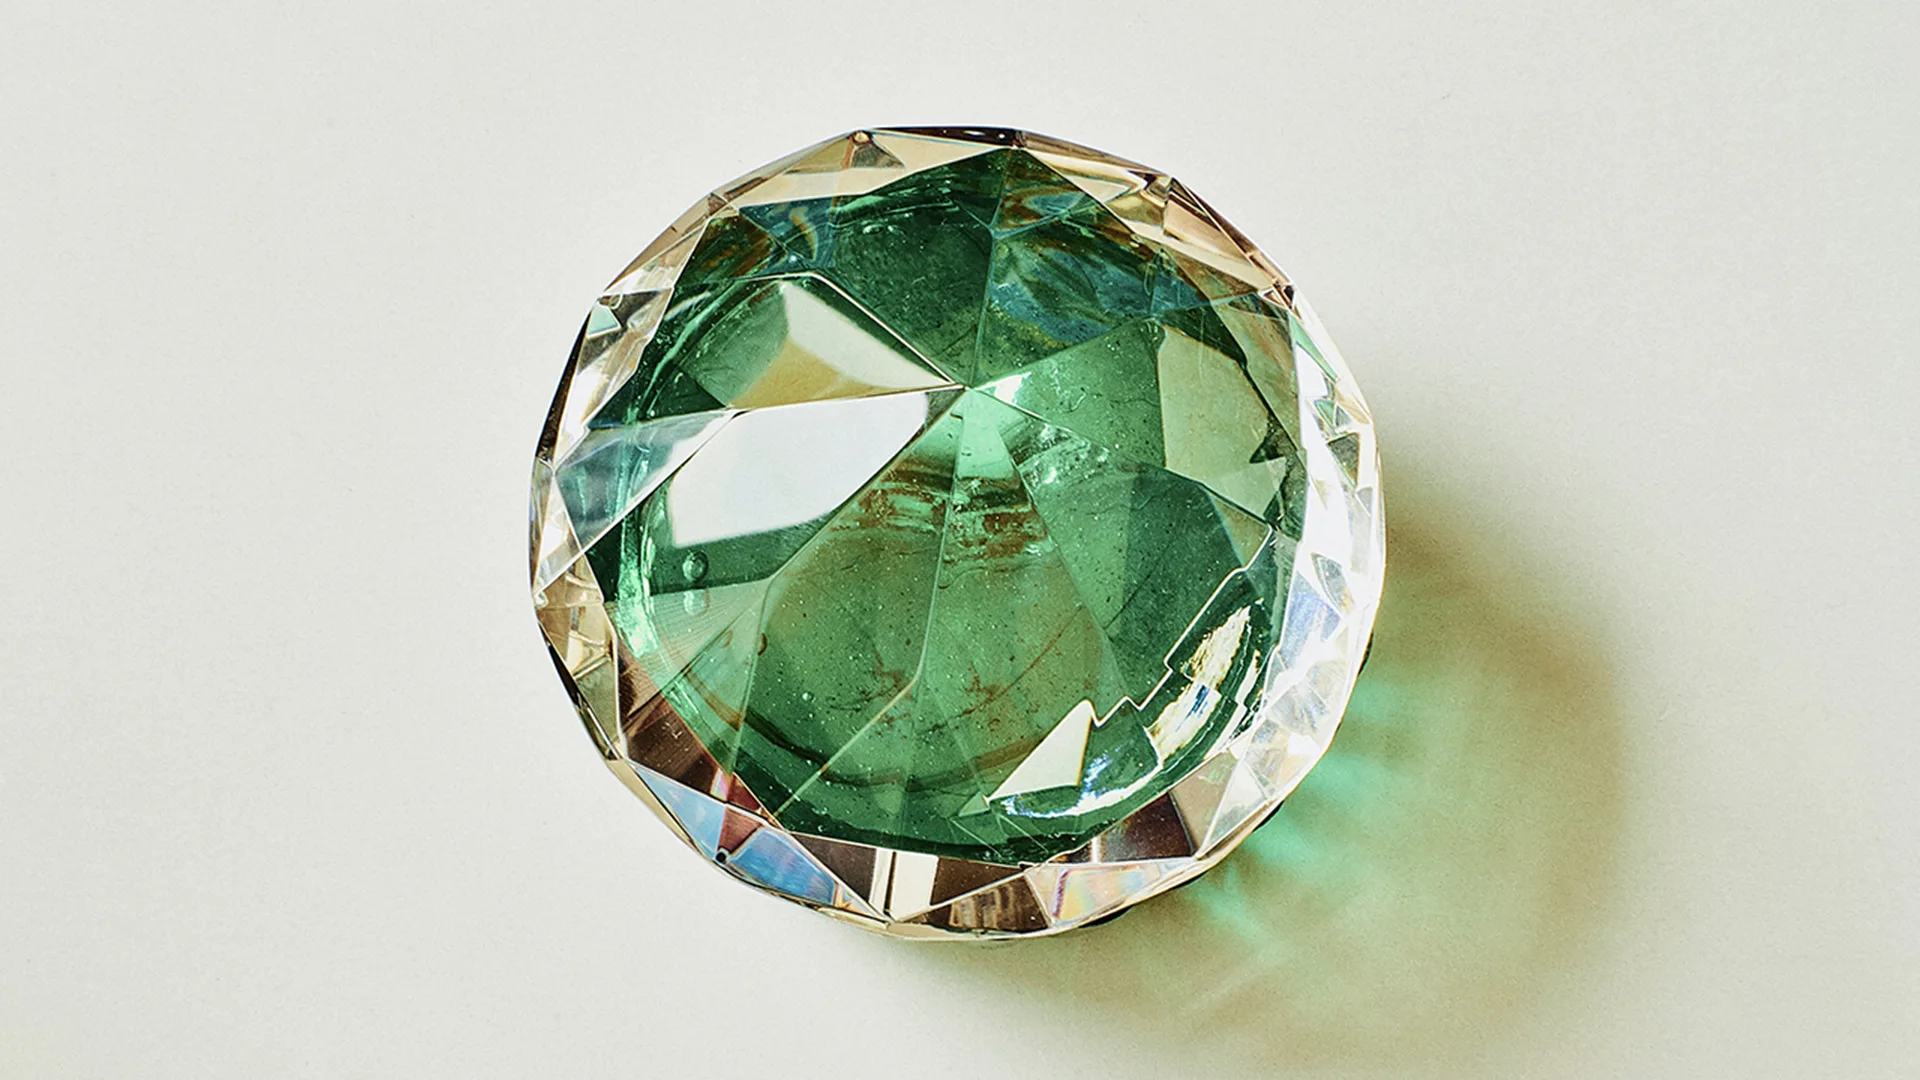 A green jewel